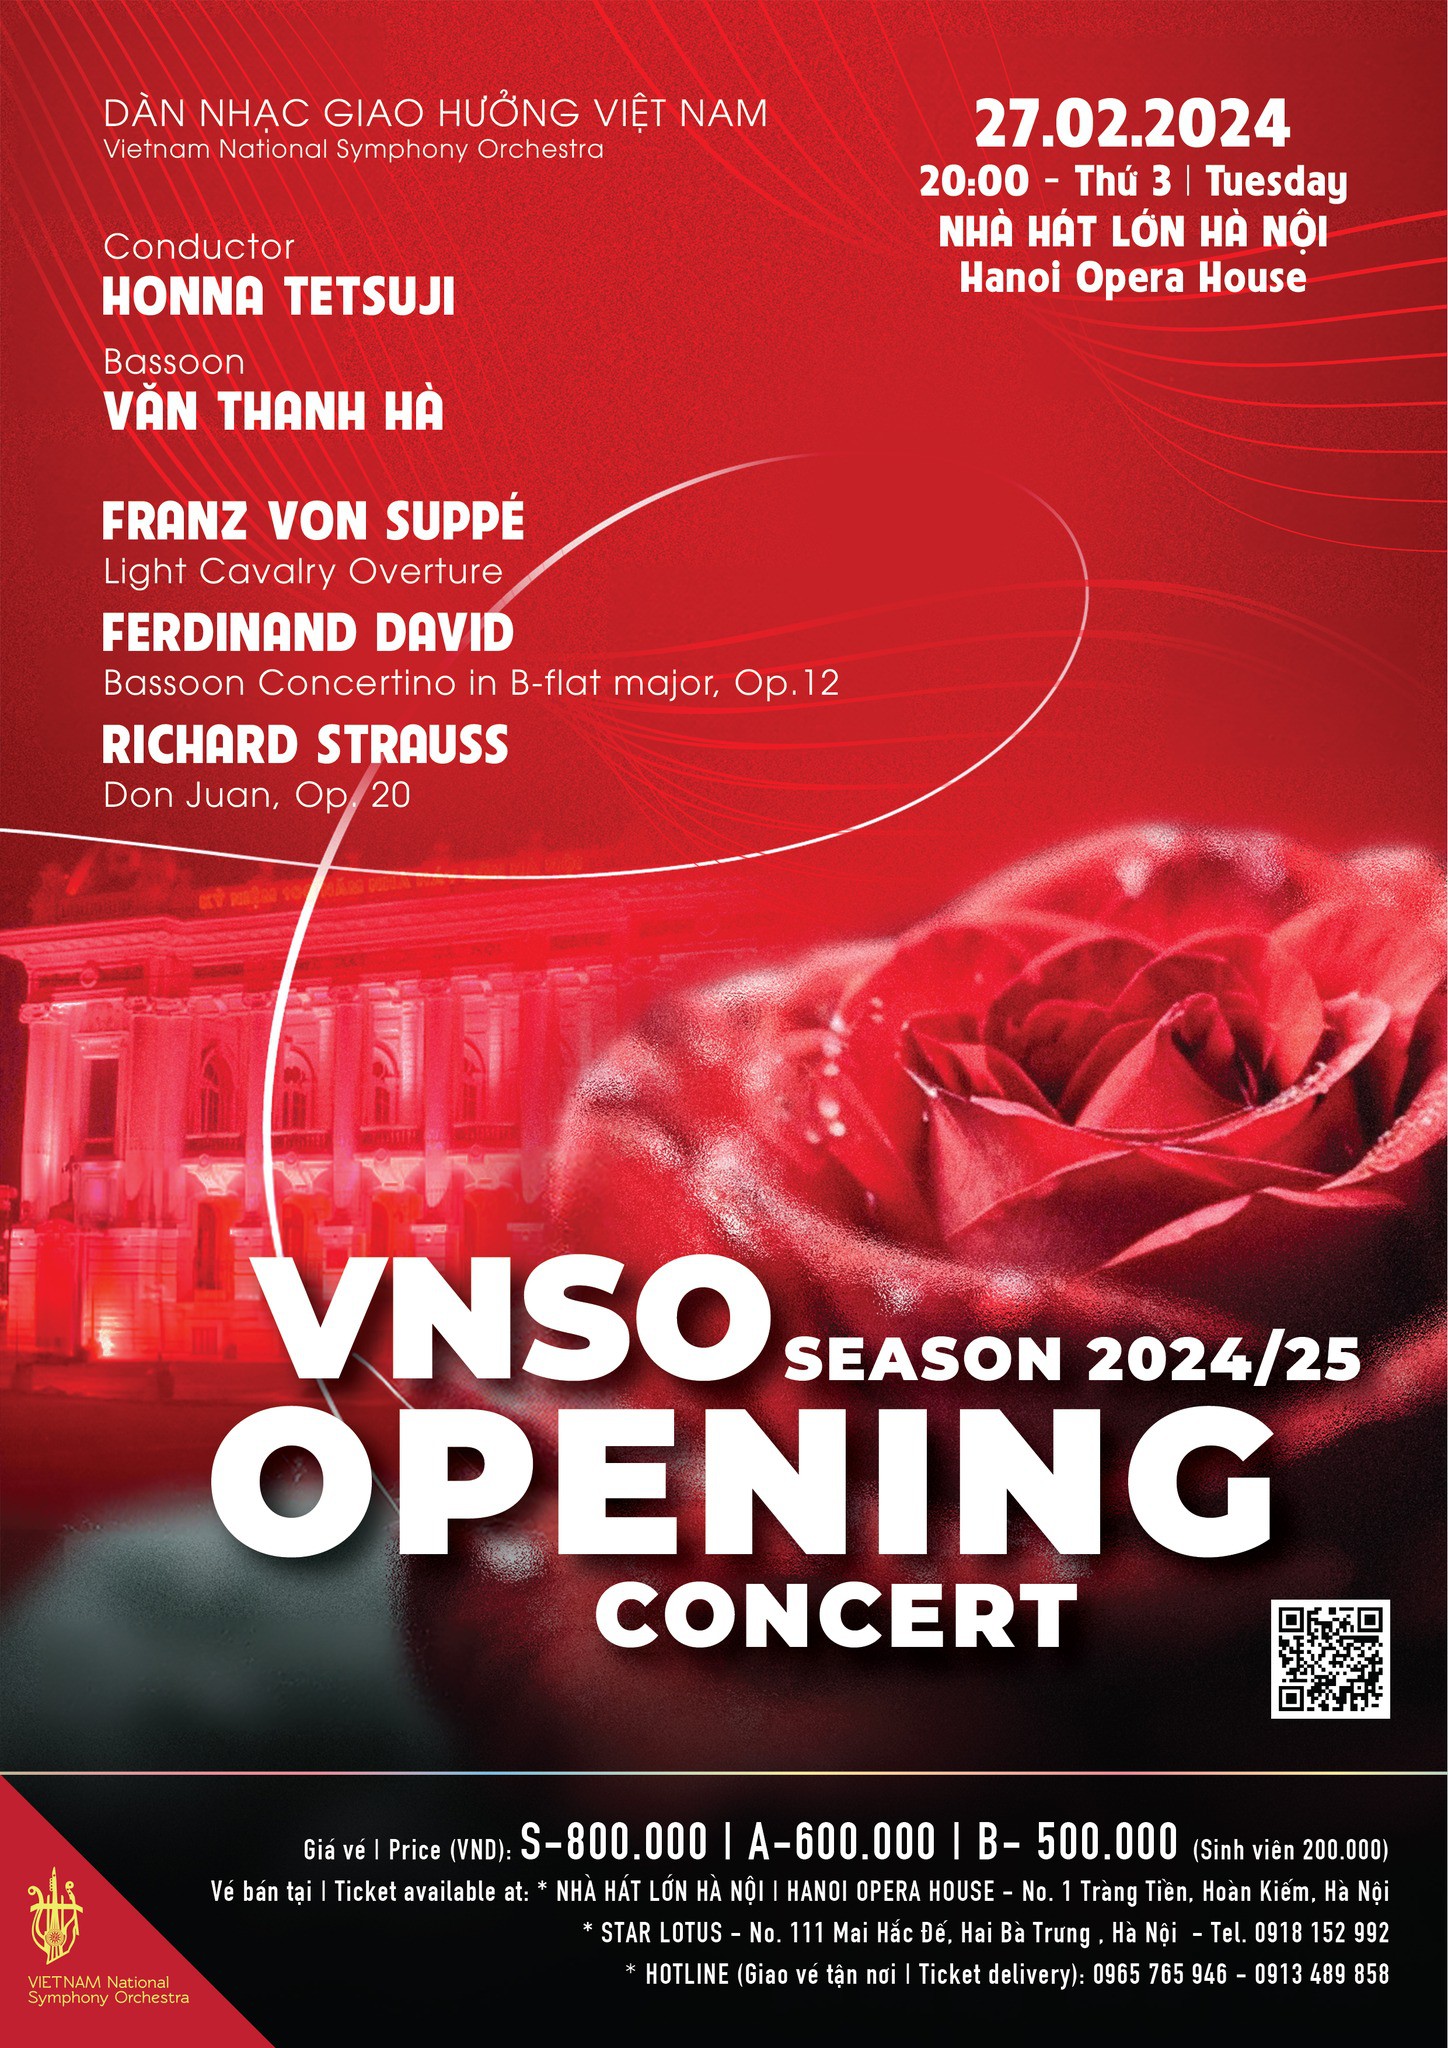 Hòa nhạc giao hưởng VNSO Season 2024/25 Opening Concert - Ngày 27.02.2024